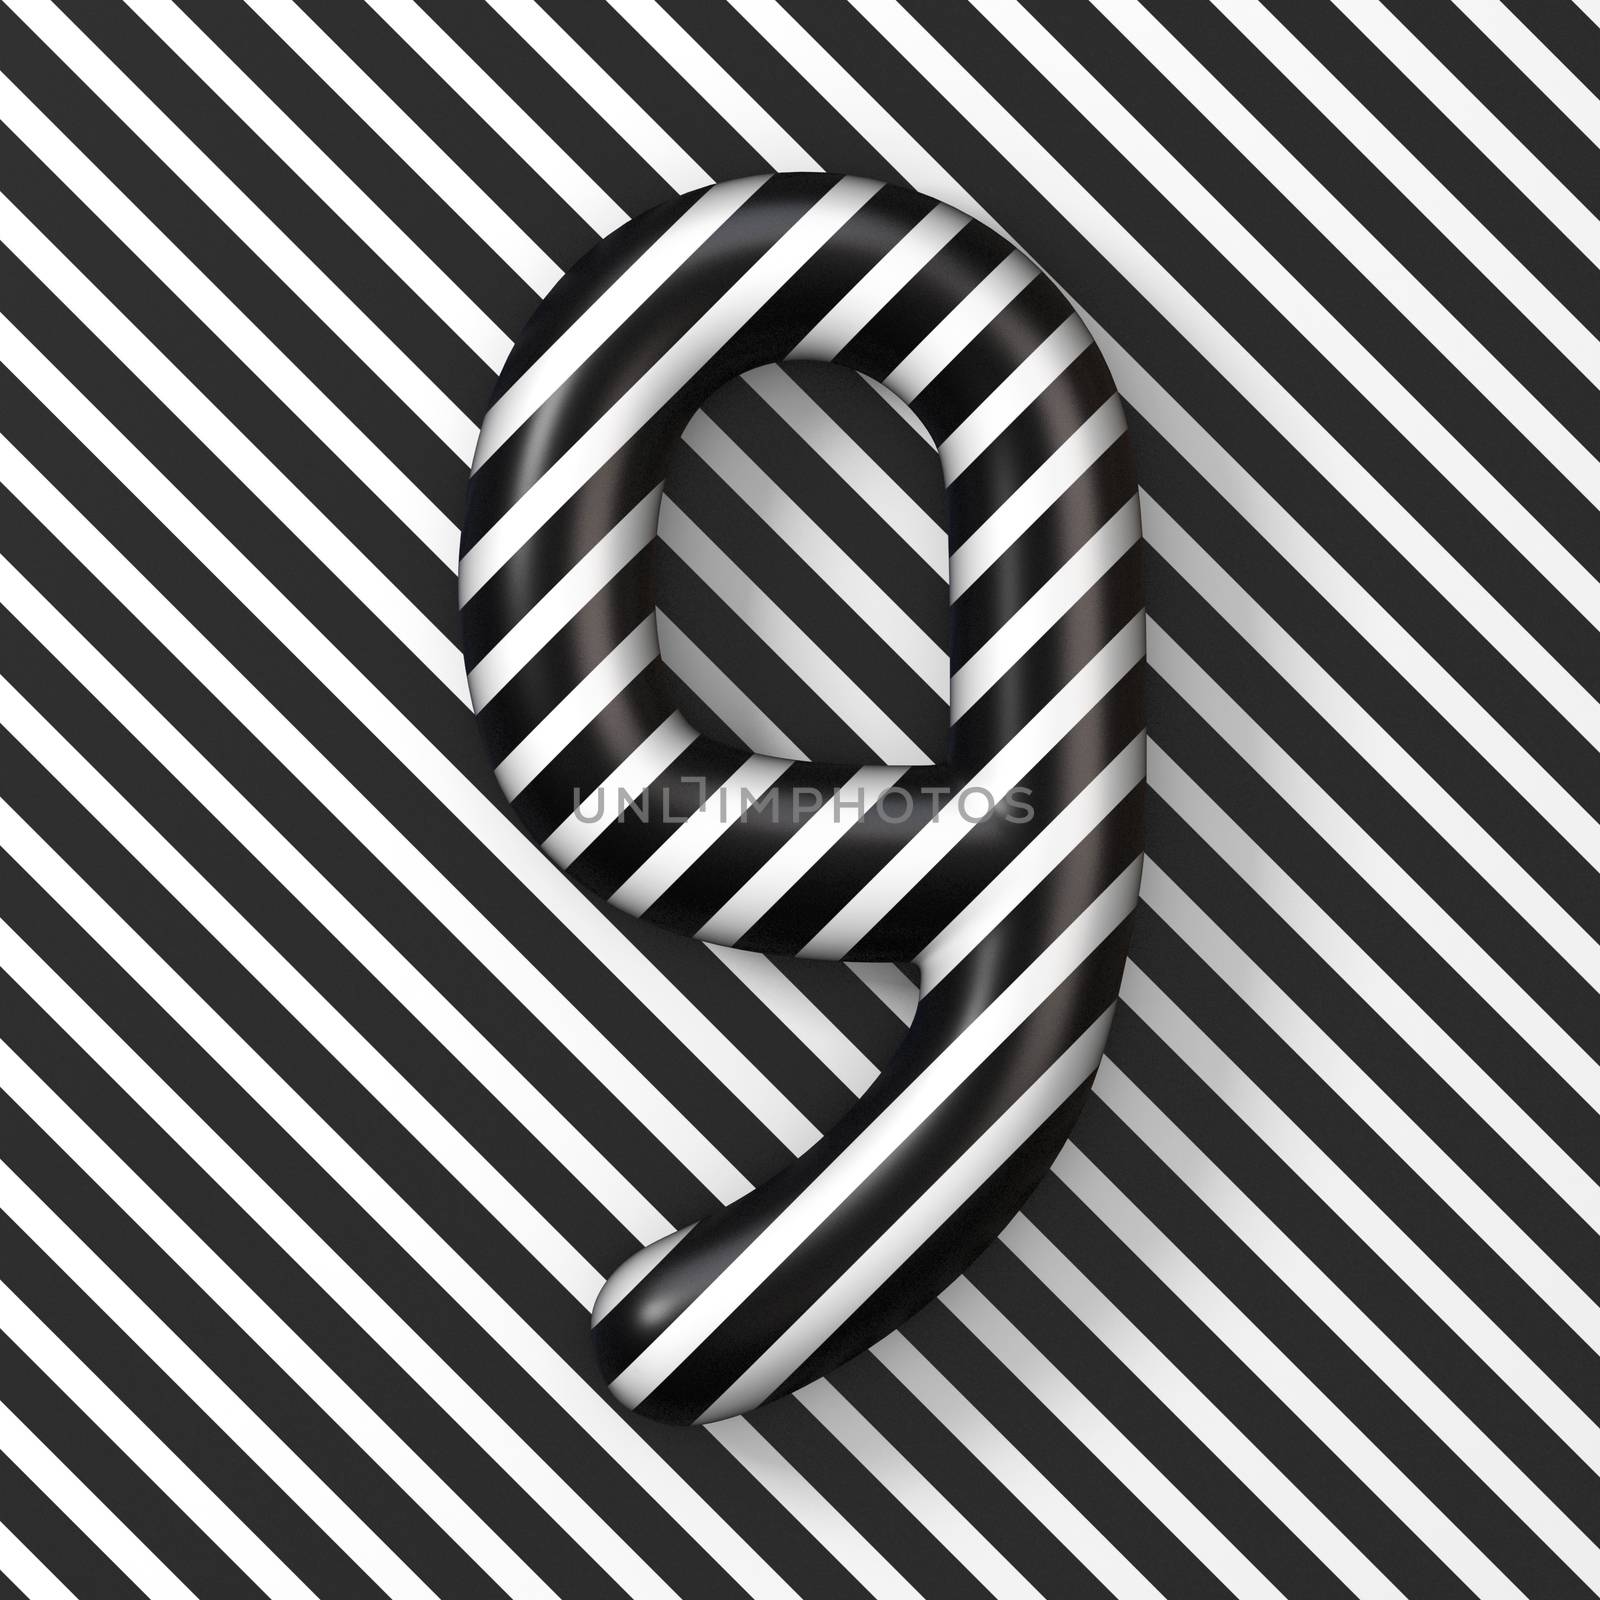 Black and white stripes Number 9 NINE 3D render illustration